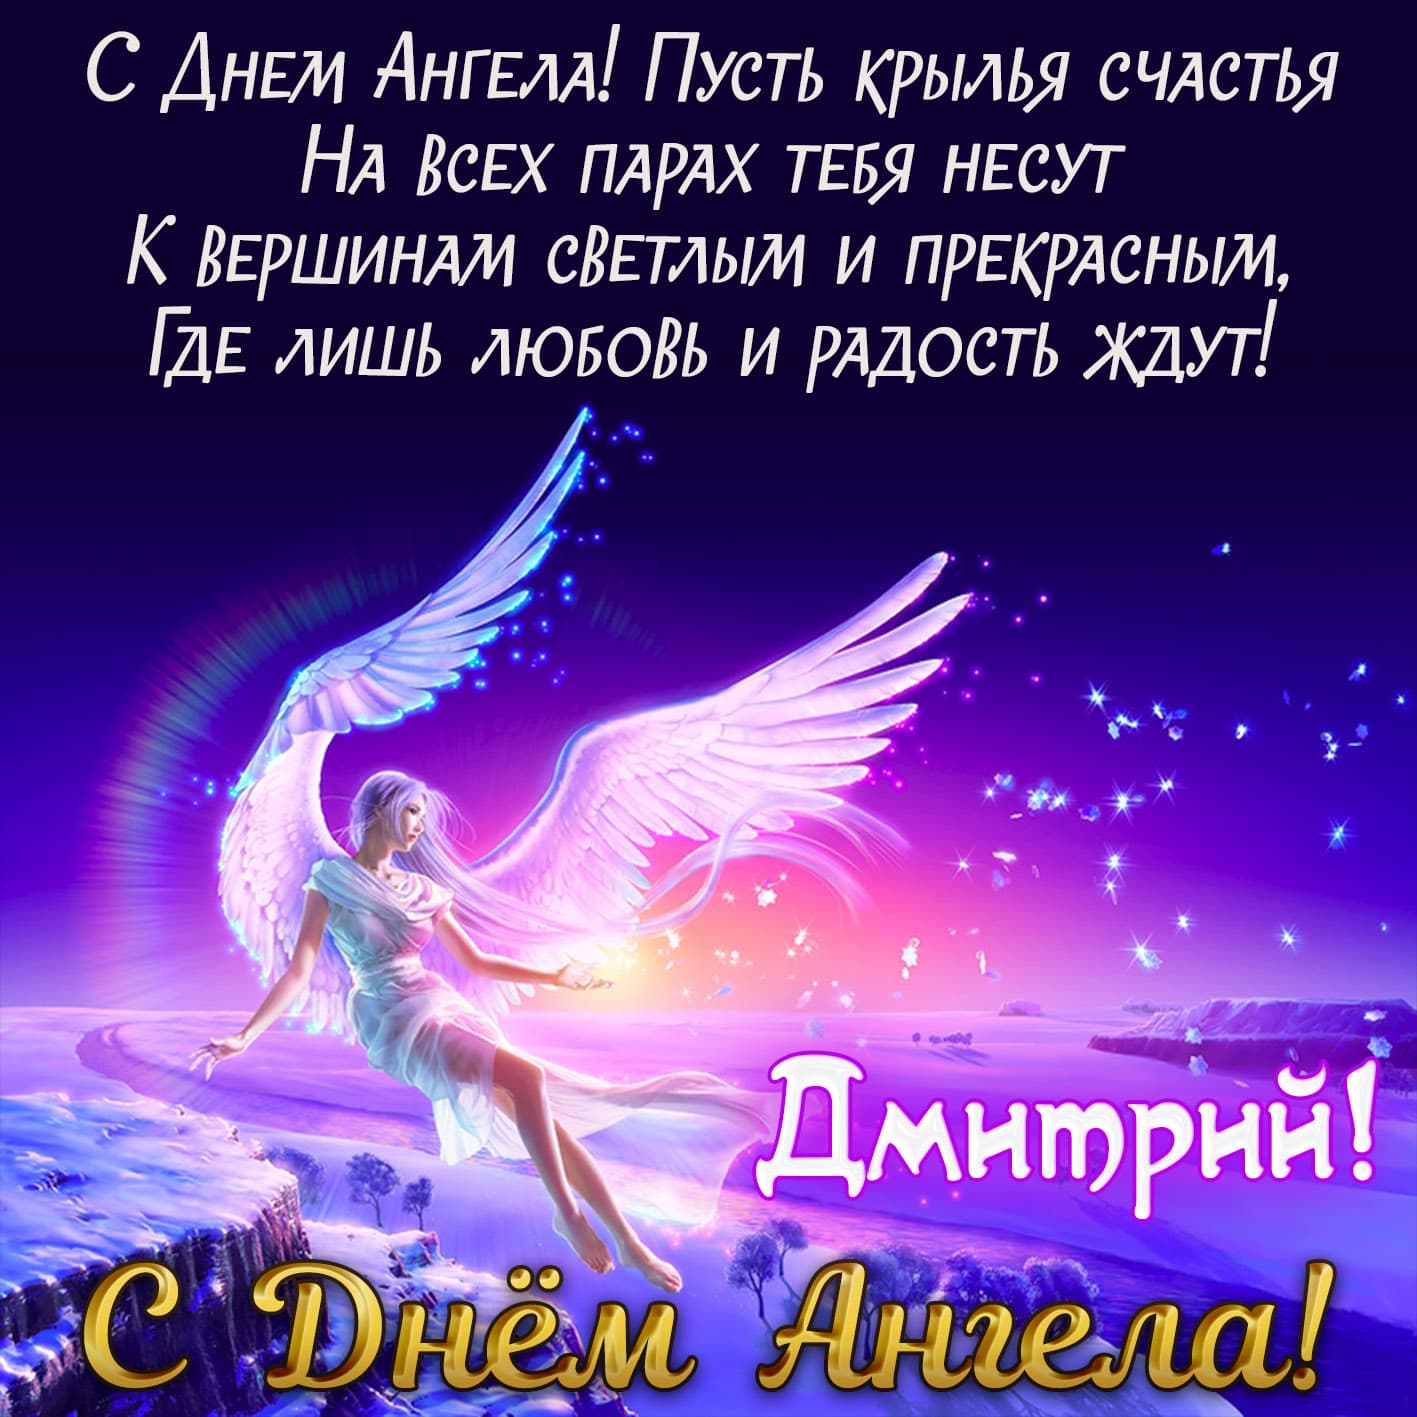 Яркая картинка с поздравлением дмитрию на день ангела